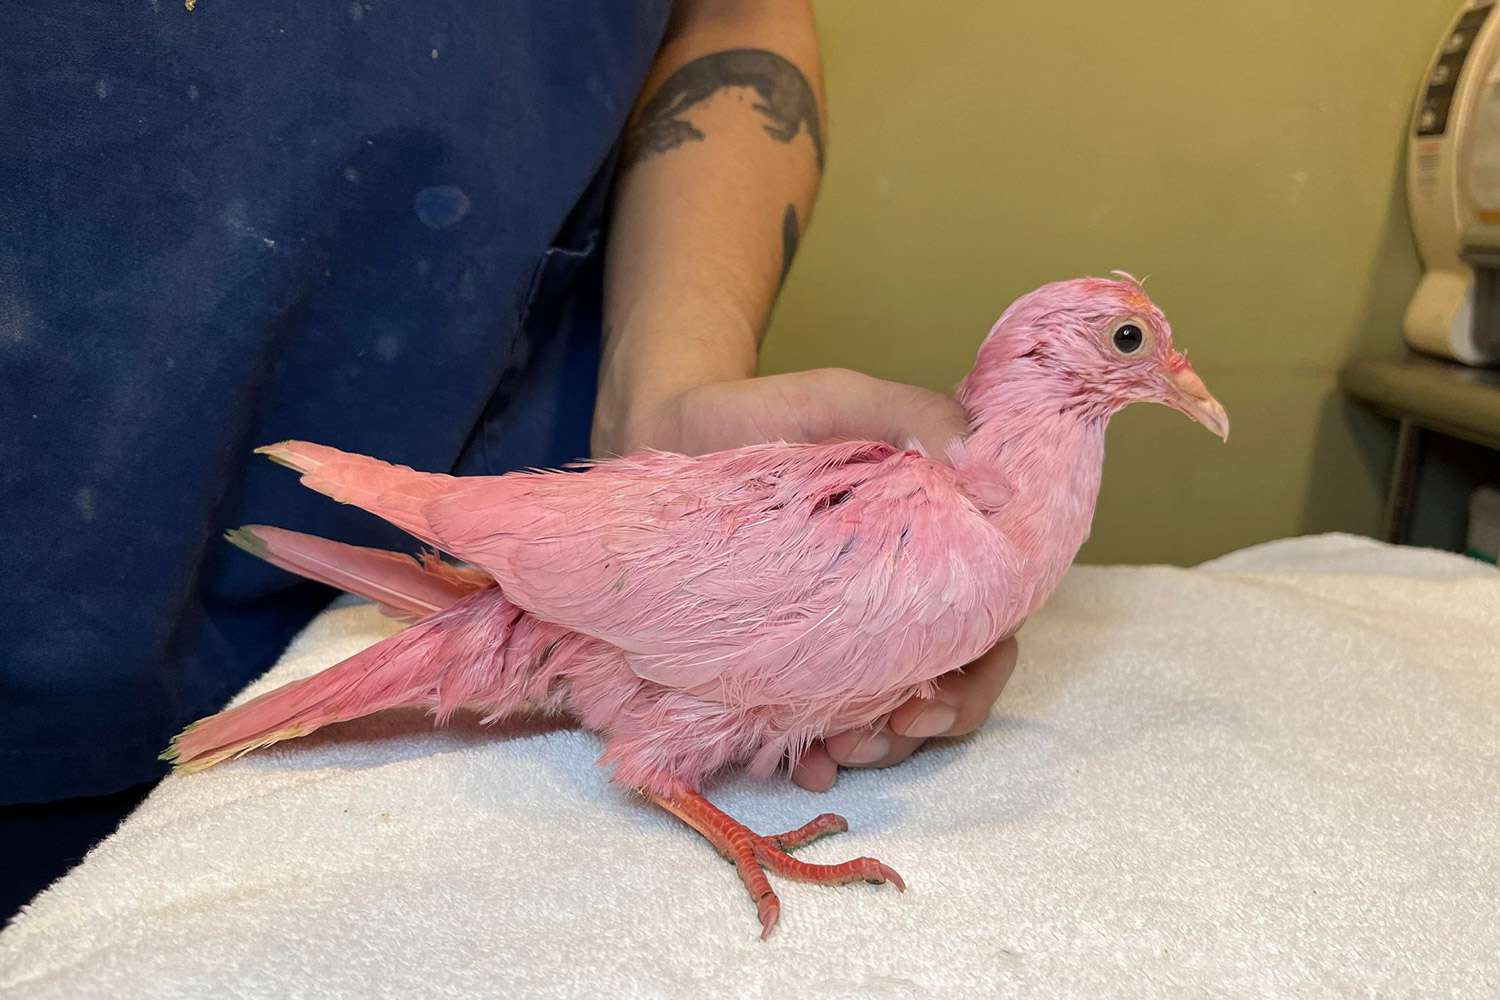 Giải cứu động vật cảnh báo 'Không bao giờ nhuộm một con chim' sau khi tìm thấy chim bồ câu màu hồng 'đấu tranh' lang thang ở NYC